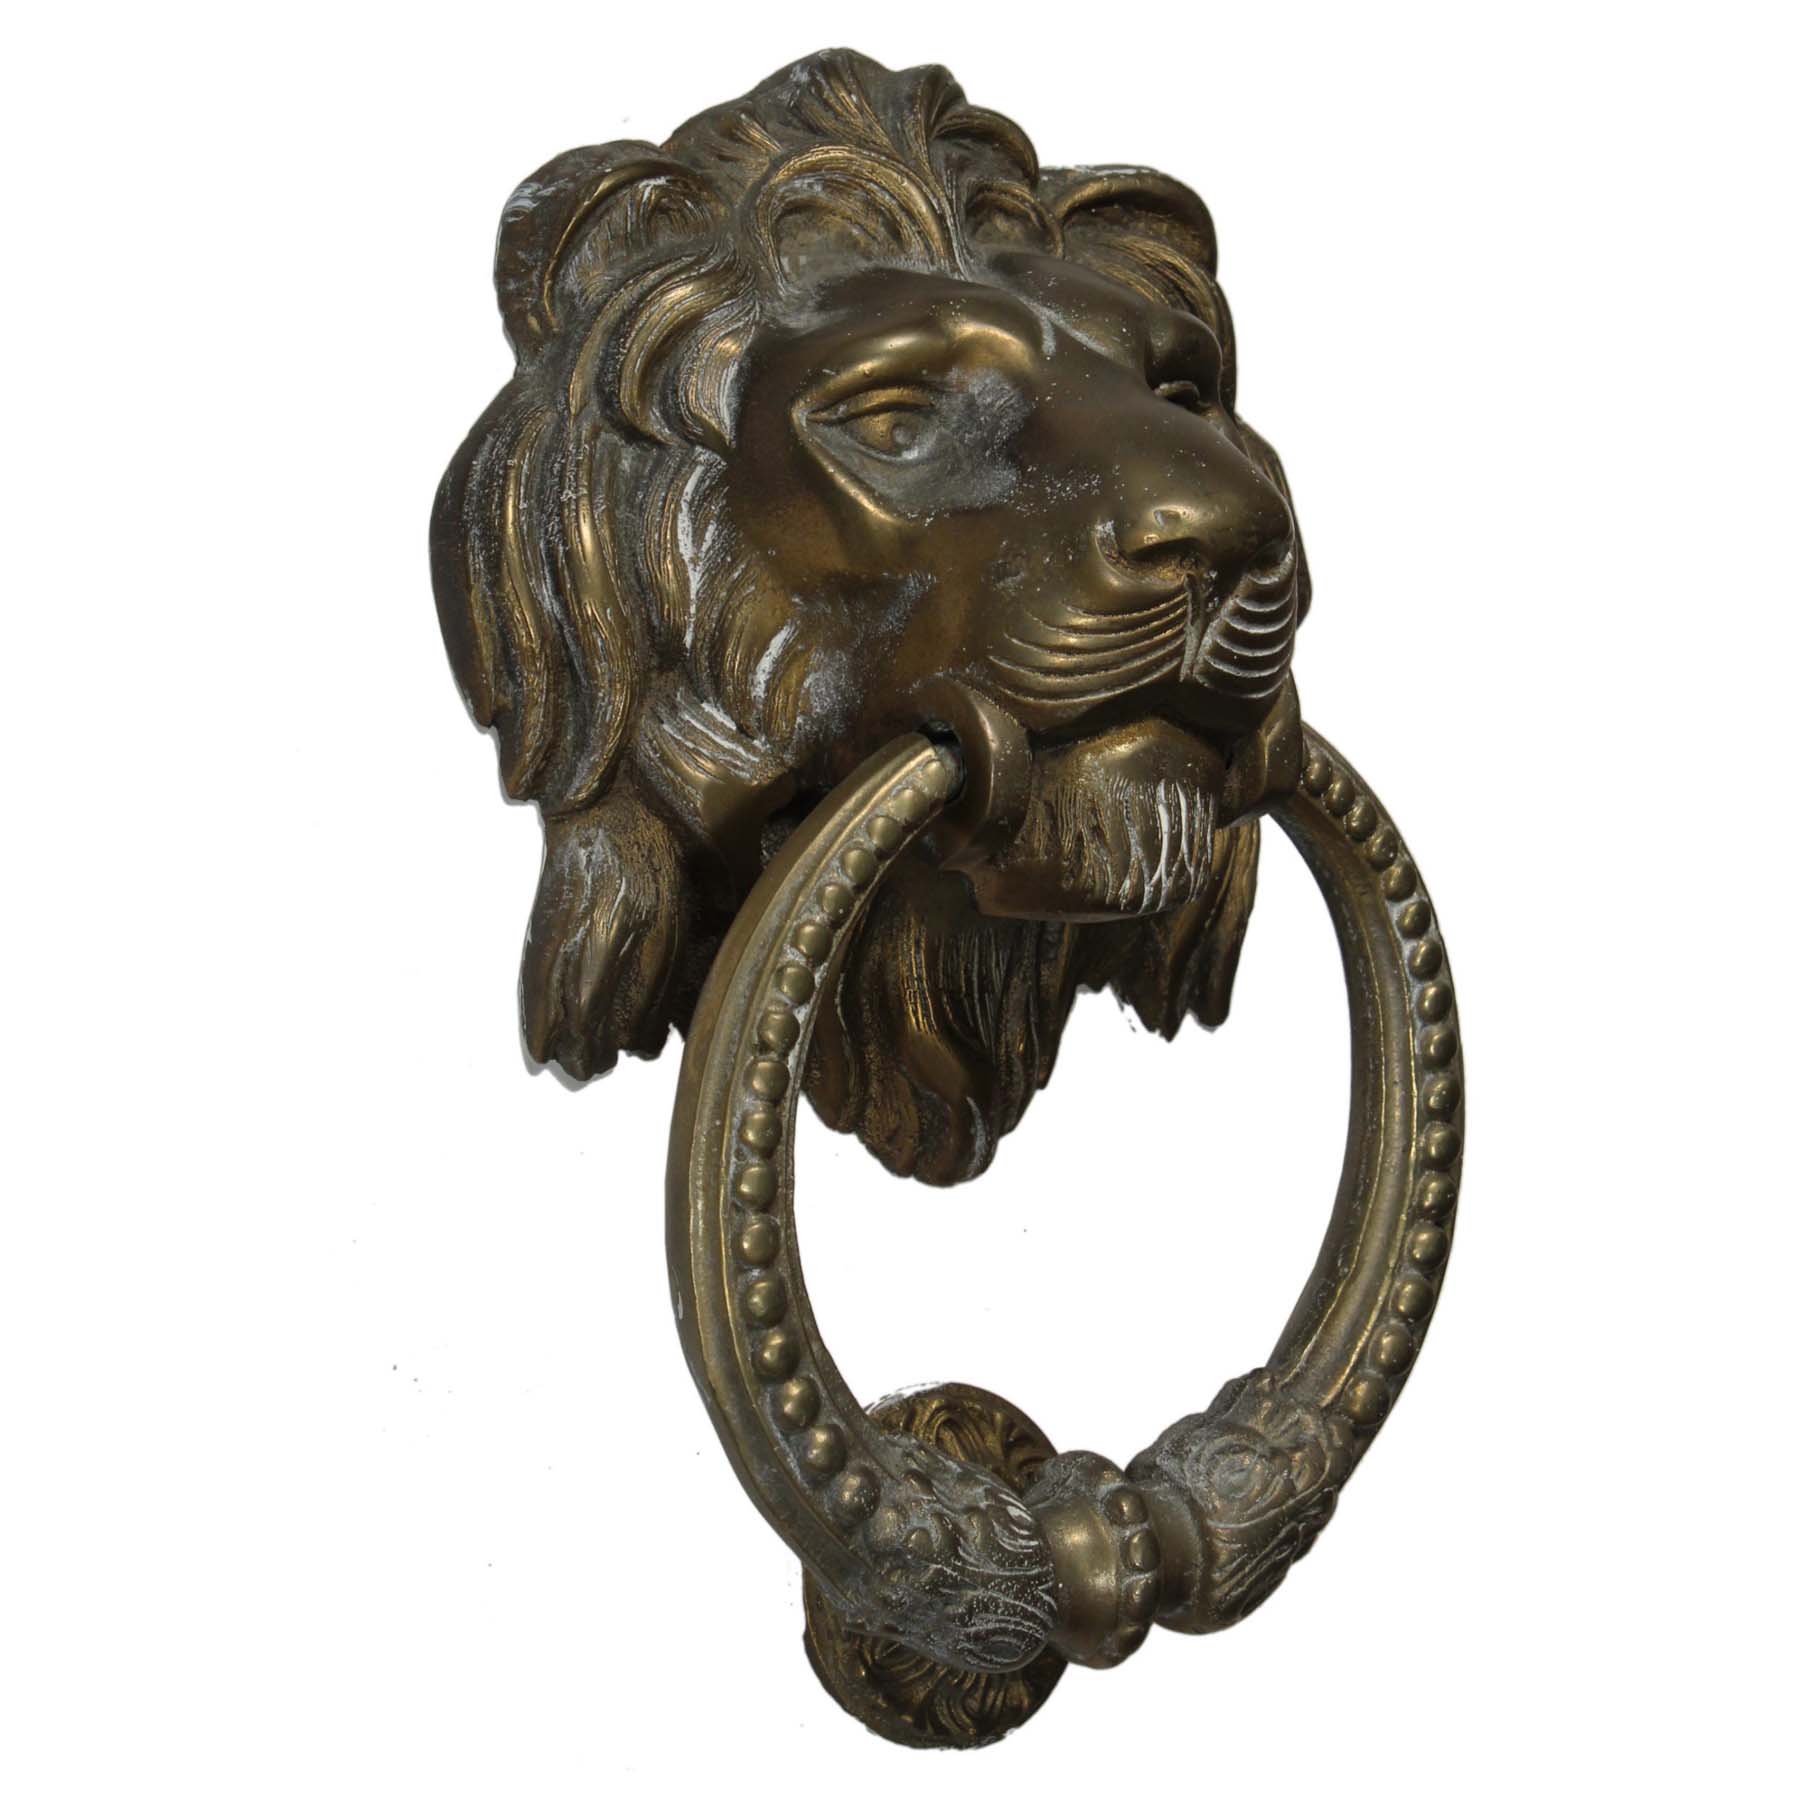 SOLD Substantial Antique Brass Lion Door Knocker, C. 1900 -70014